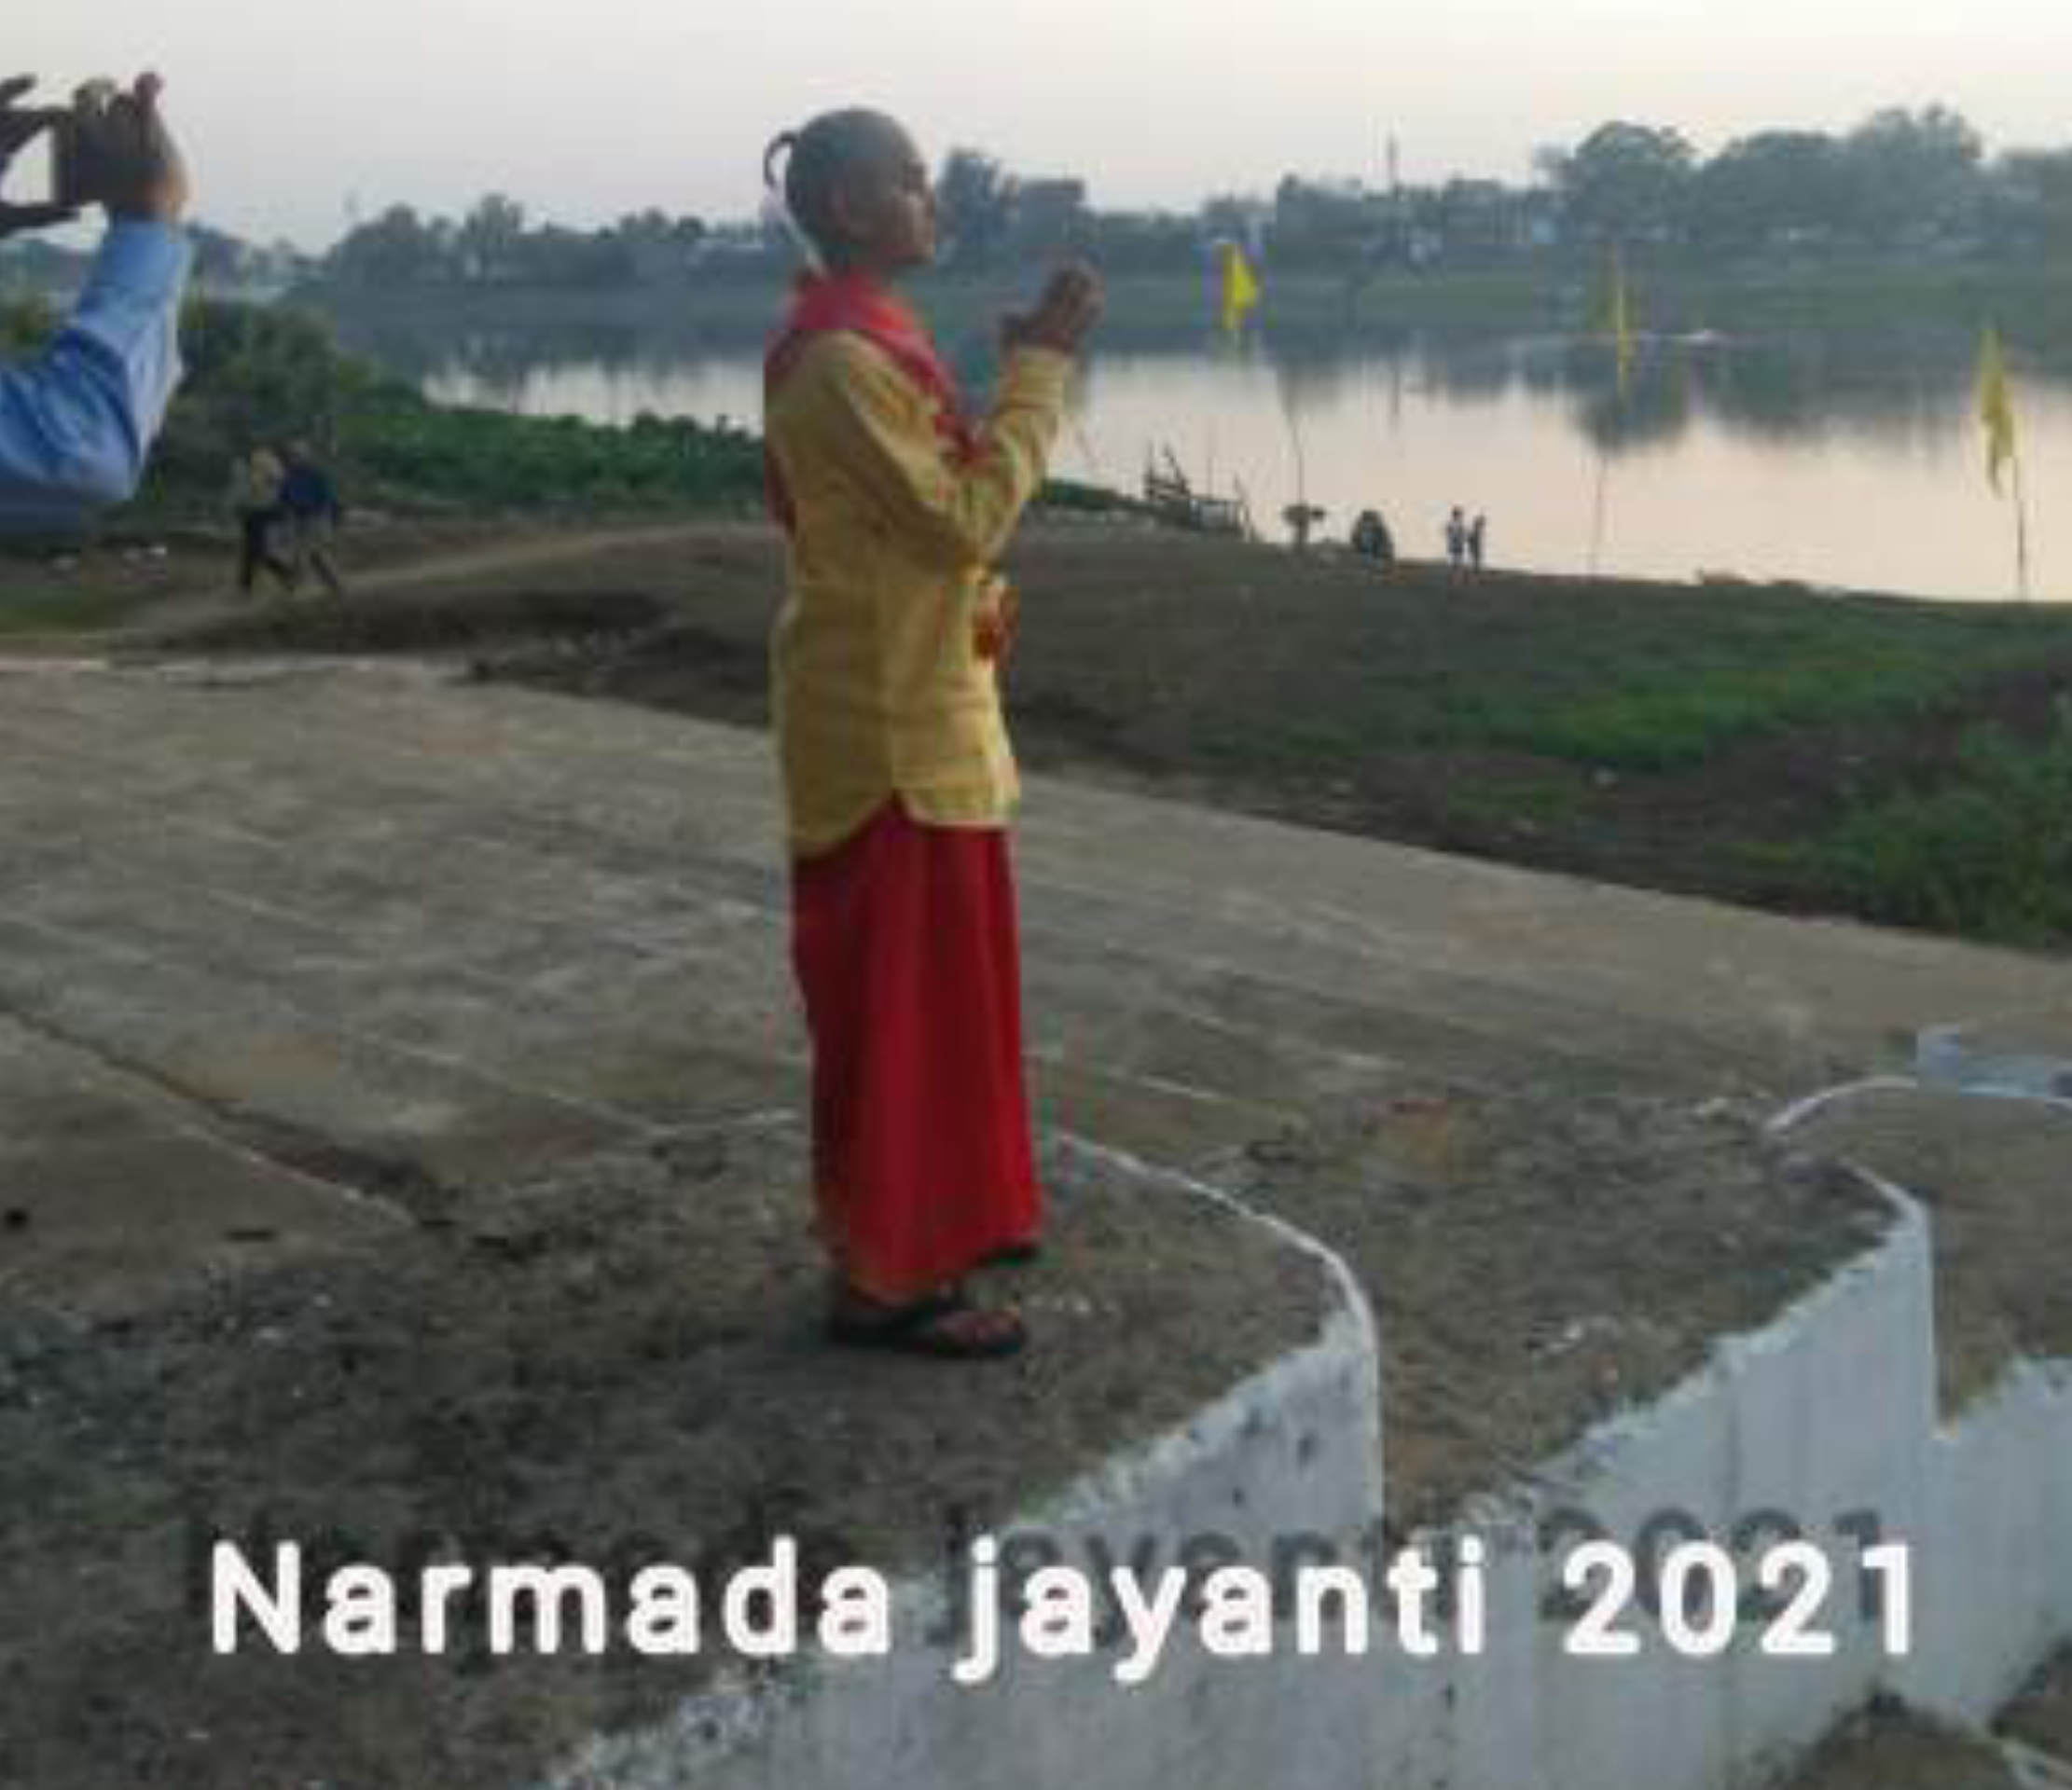 Narmada jayanti 2021: नर्मदा जयंती 2021